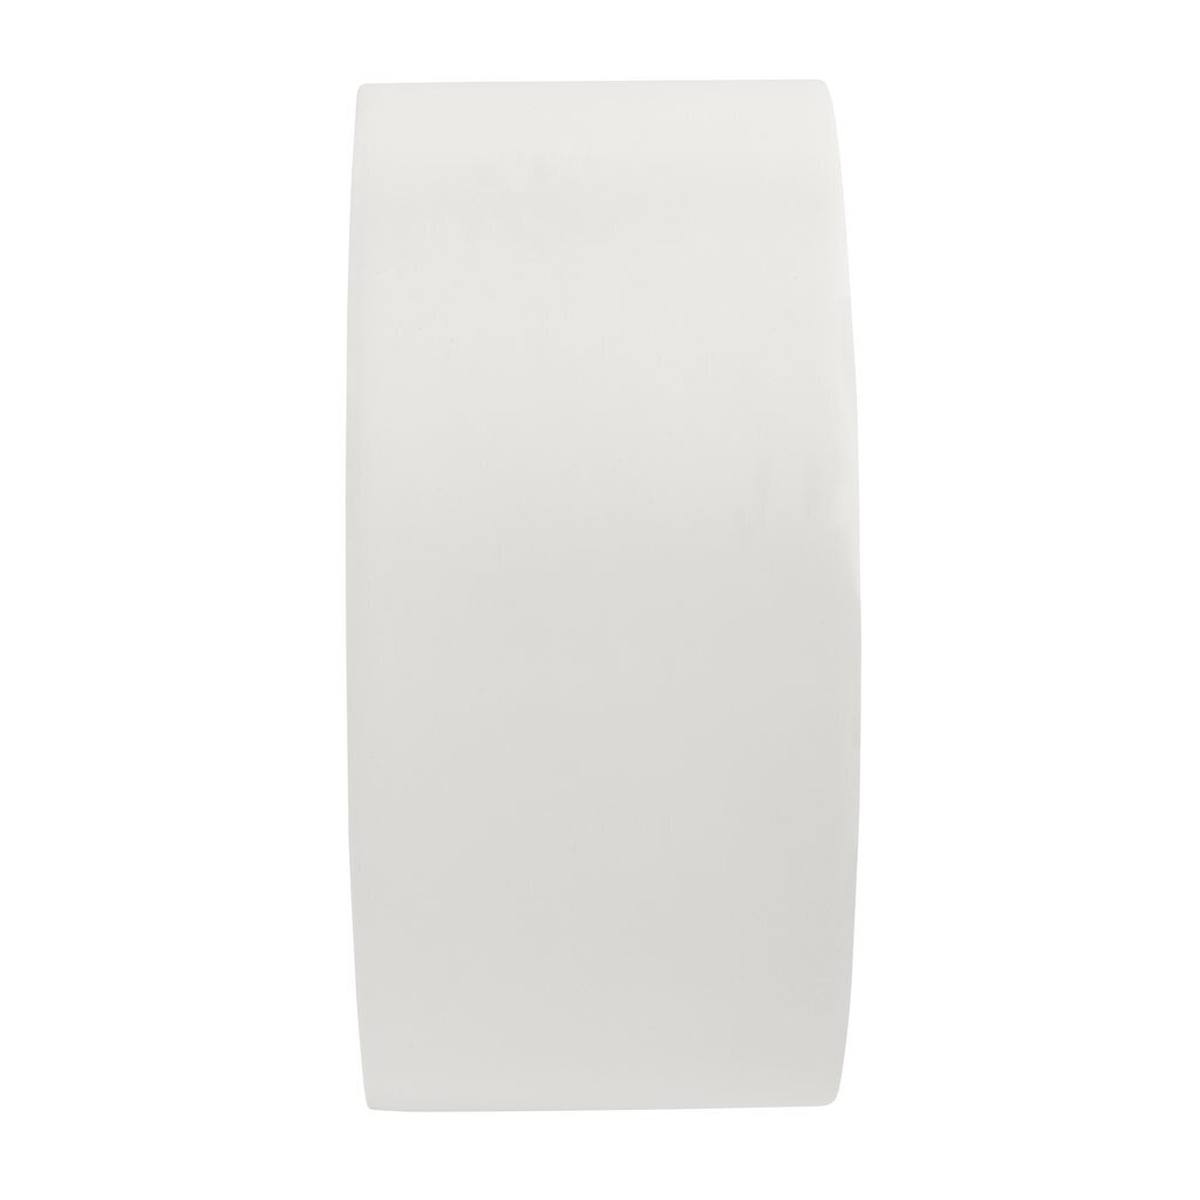 3M monikäyttöinen PVC-teippi 764, valkoinen, 50 mm x 33 m, yksittäispakattu käytännölliseen pakkaukseen.